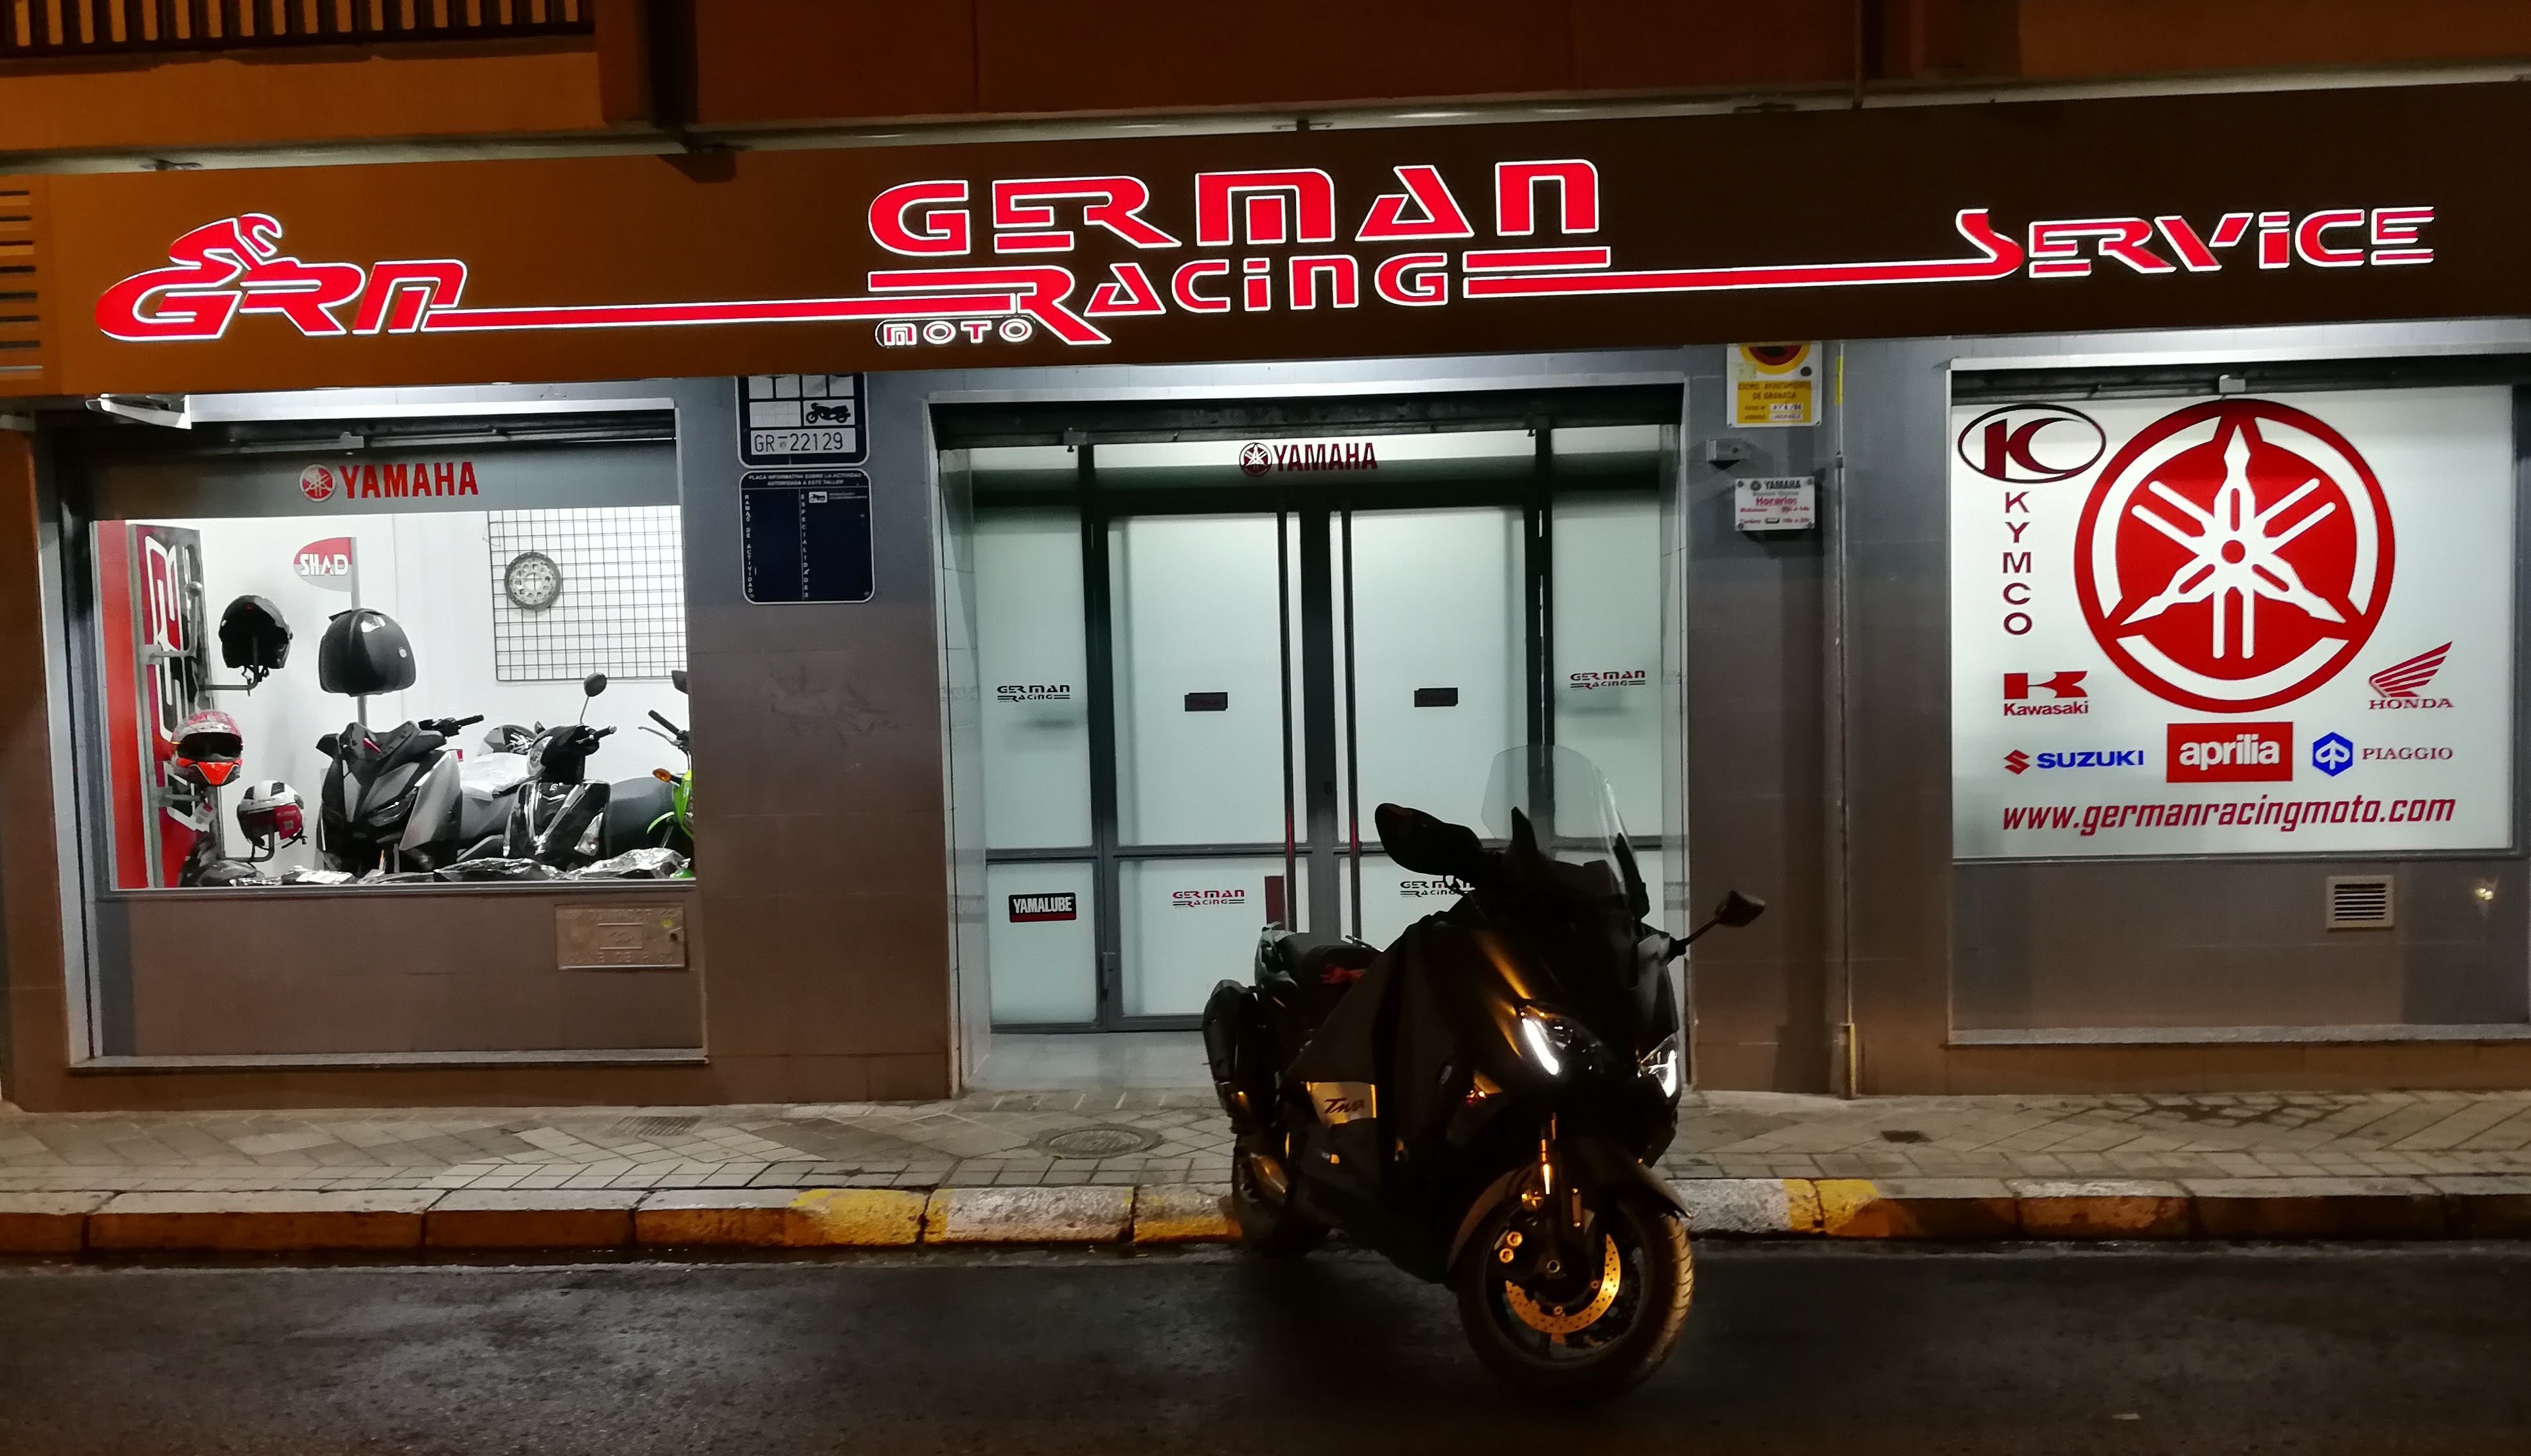 Germán Racing Moto Granada